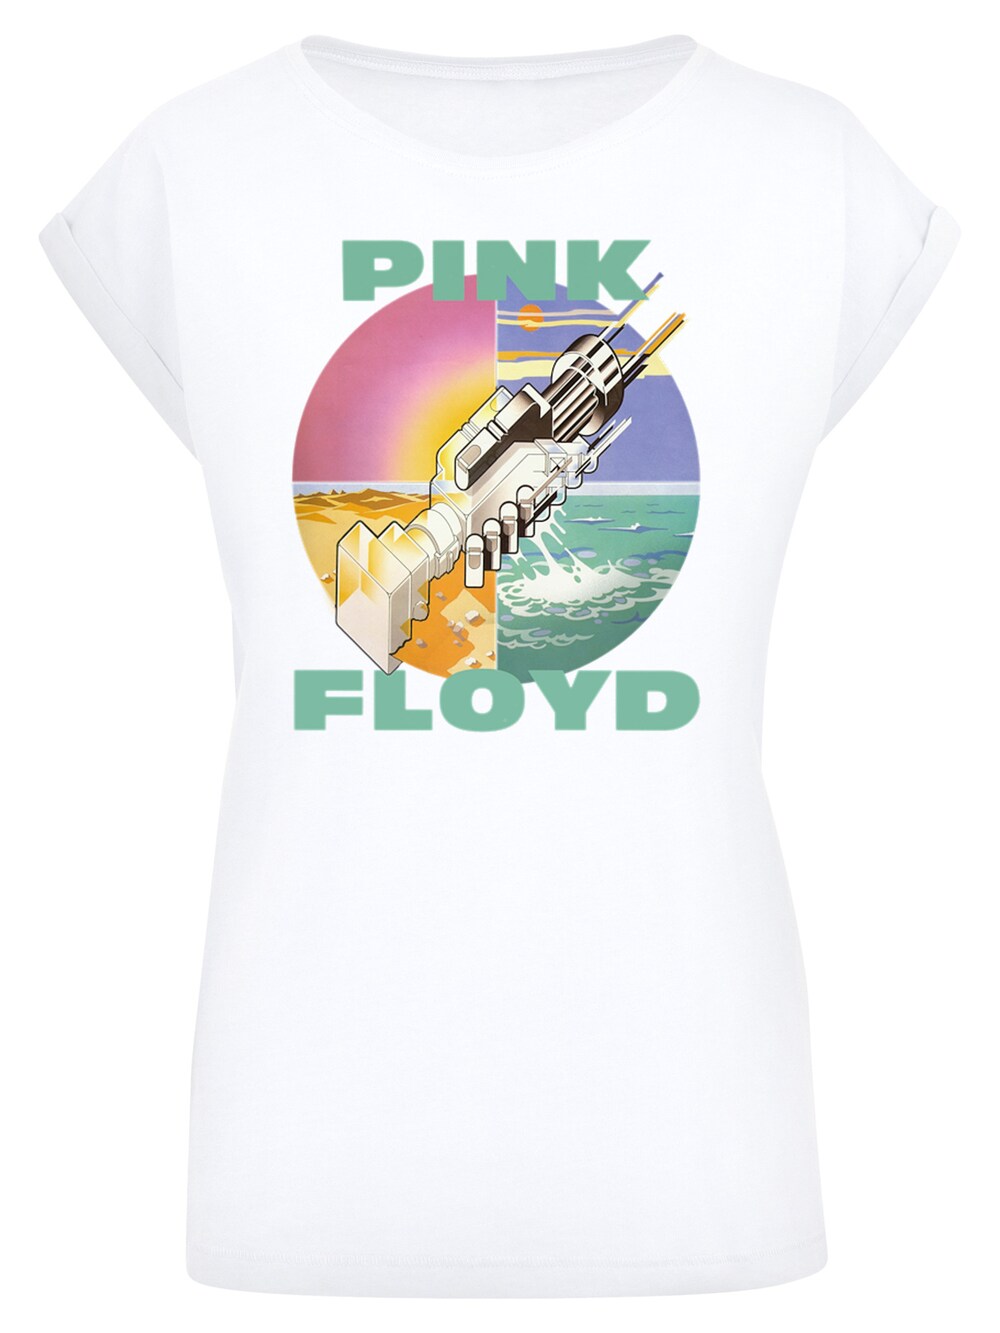 Рубашка F4Nt4Stic Pink Floyd Wish You Were Here, белый pink floyd wish you were here lp конверты внутренние coex для грампластинок 12 25шт набор